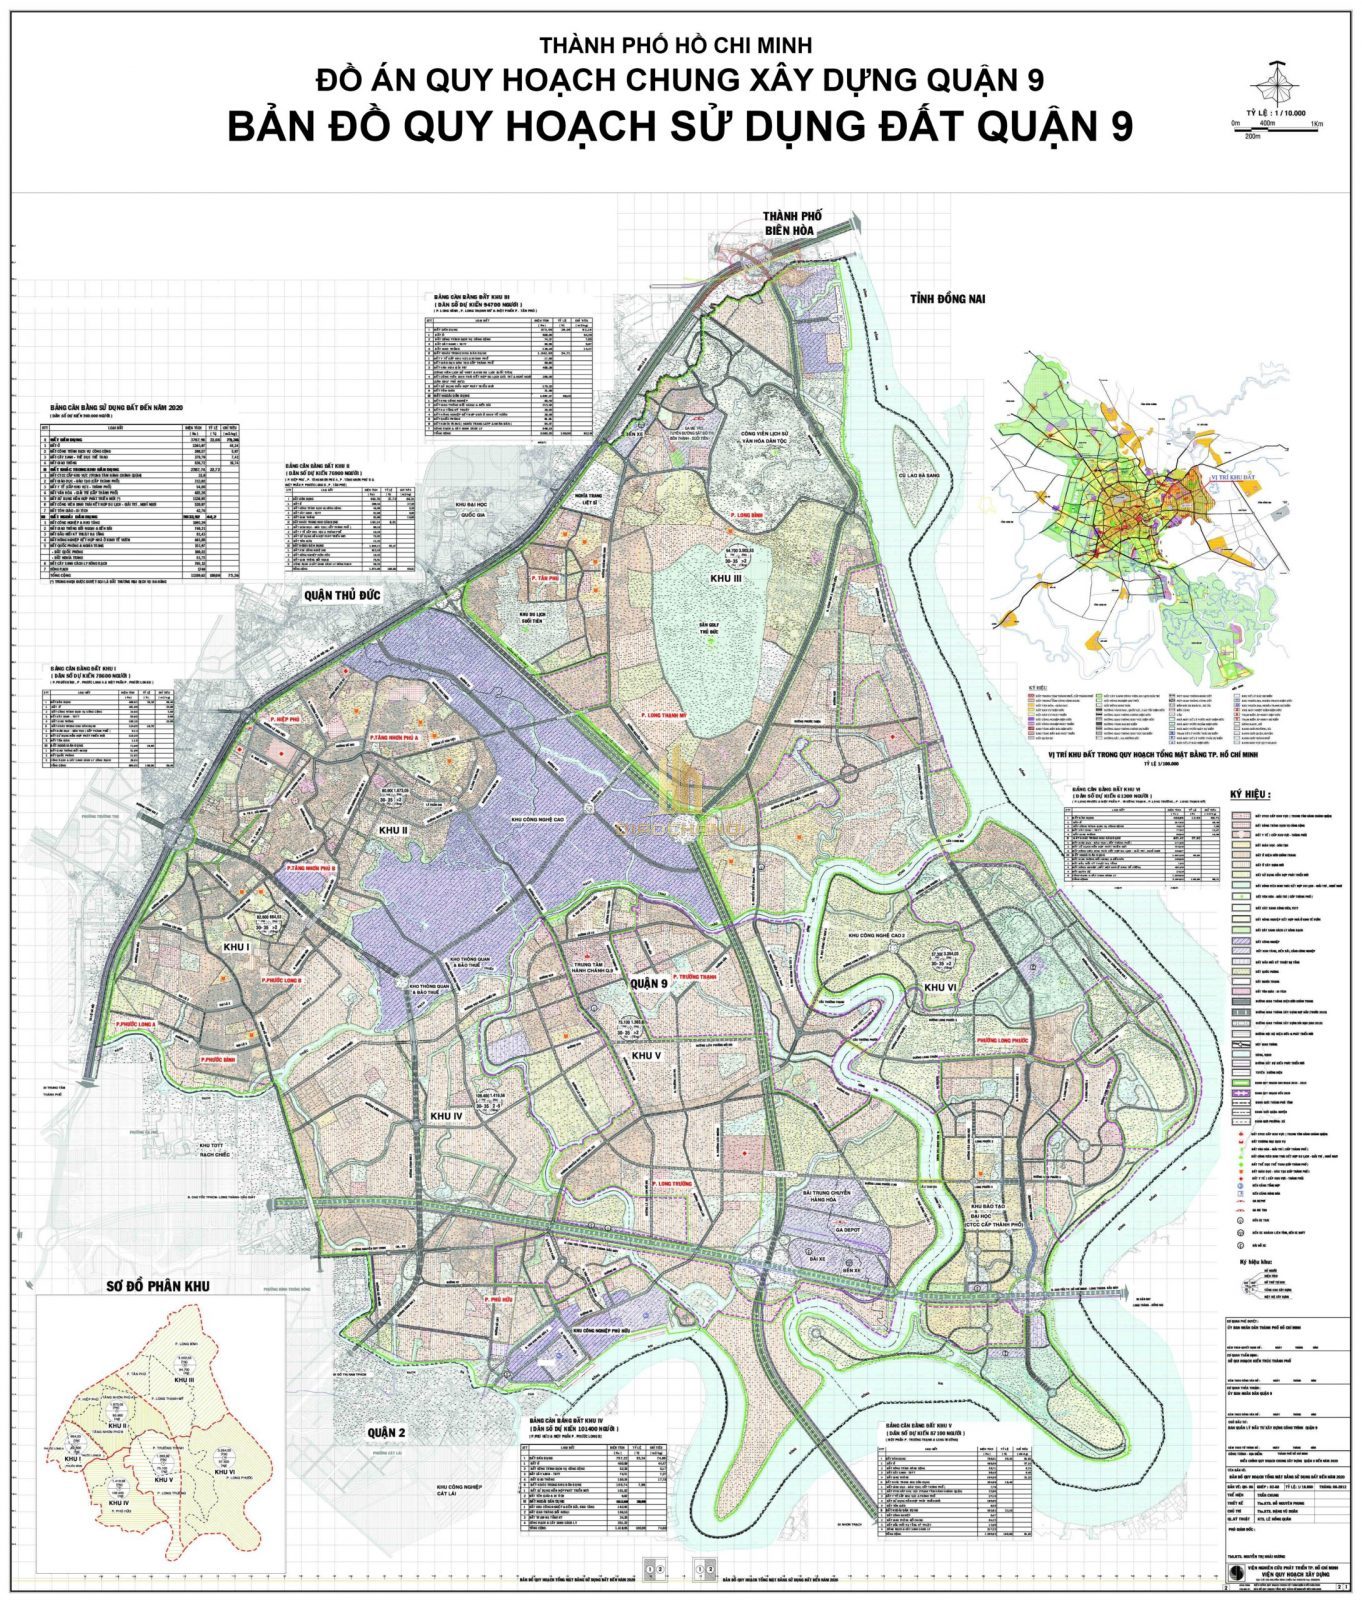 Bản đồ quy hoạch sử dụng đất quận 9